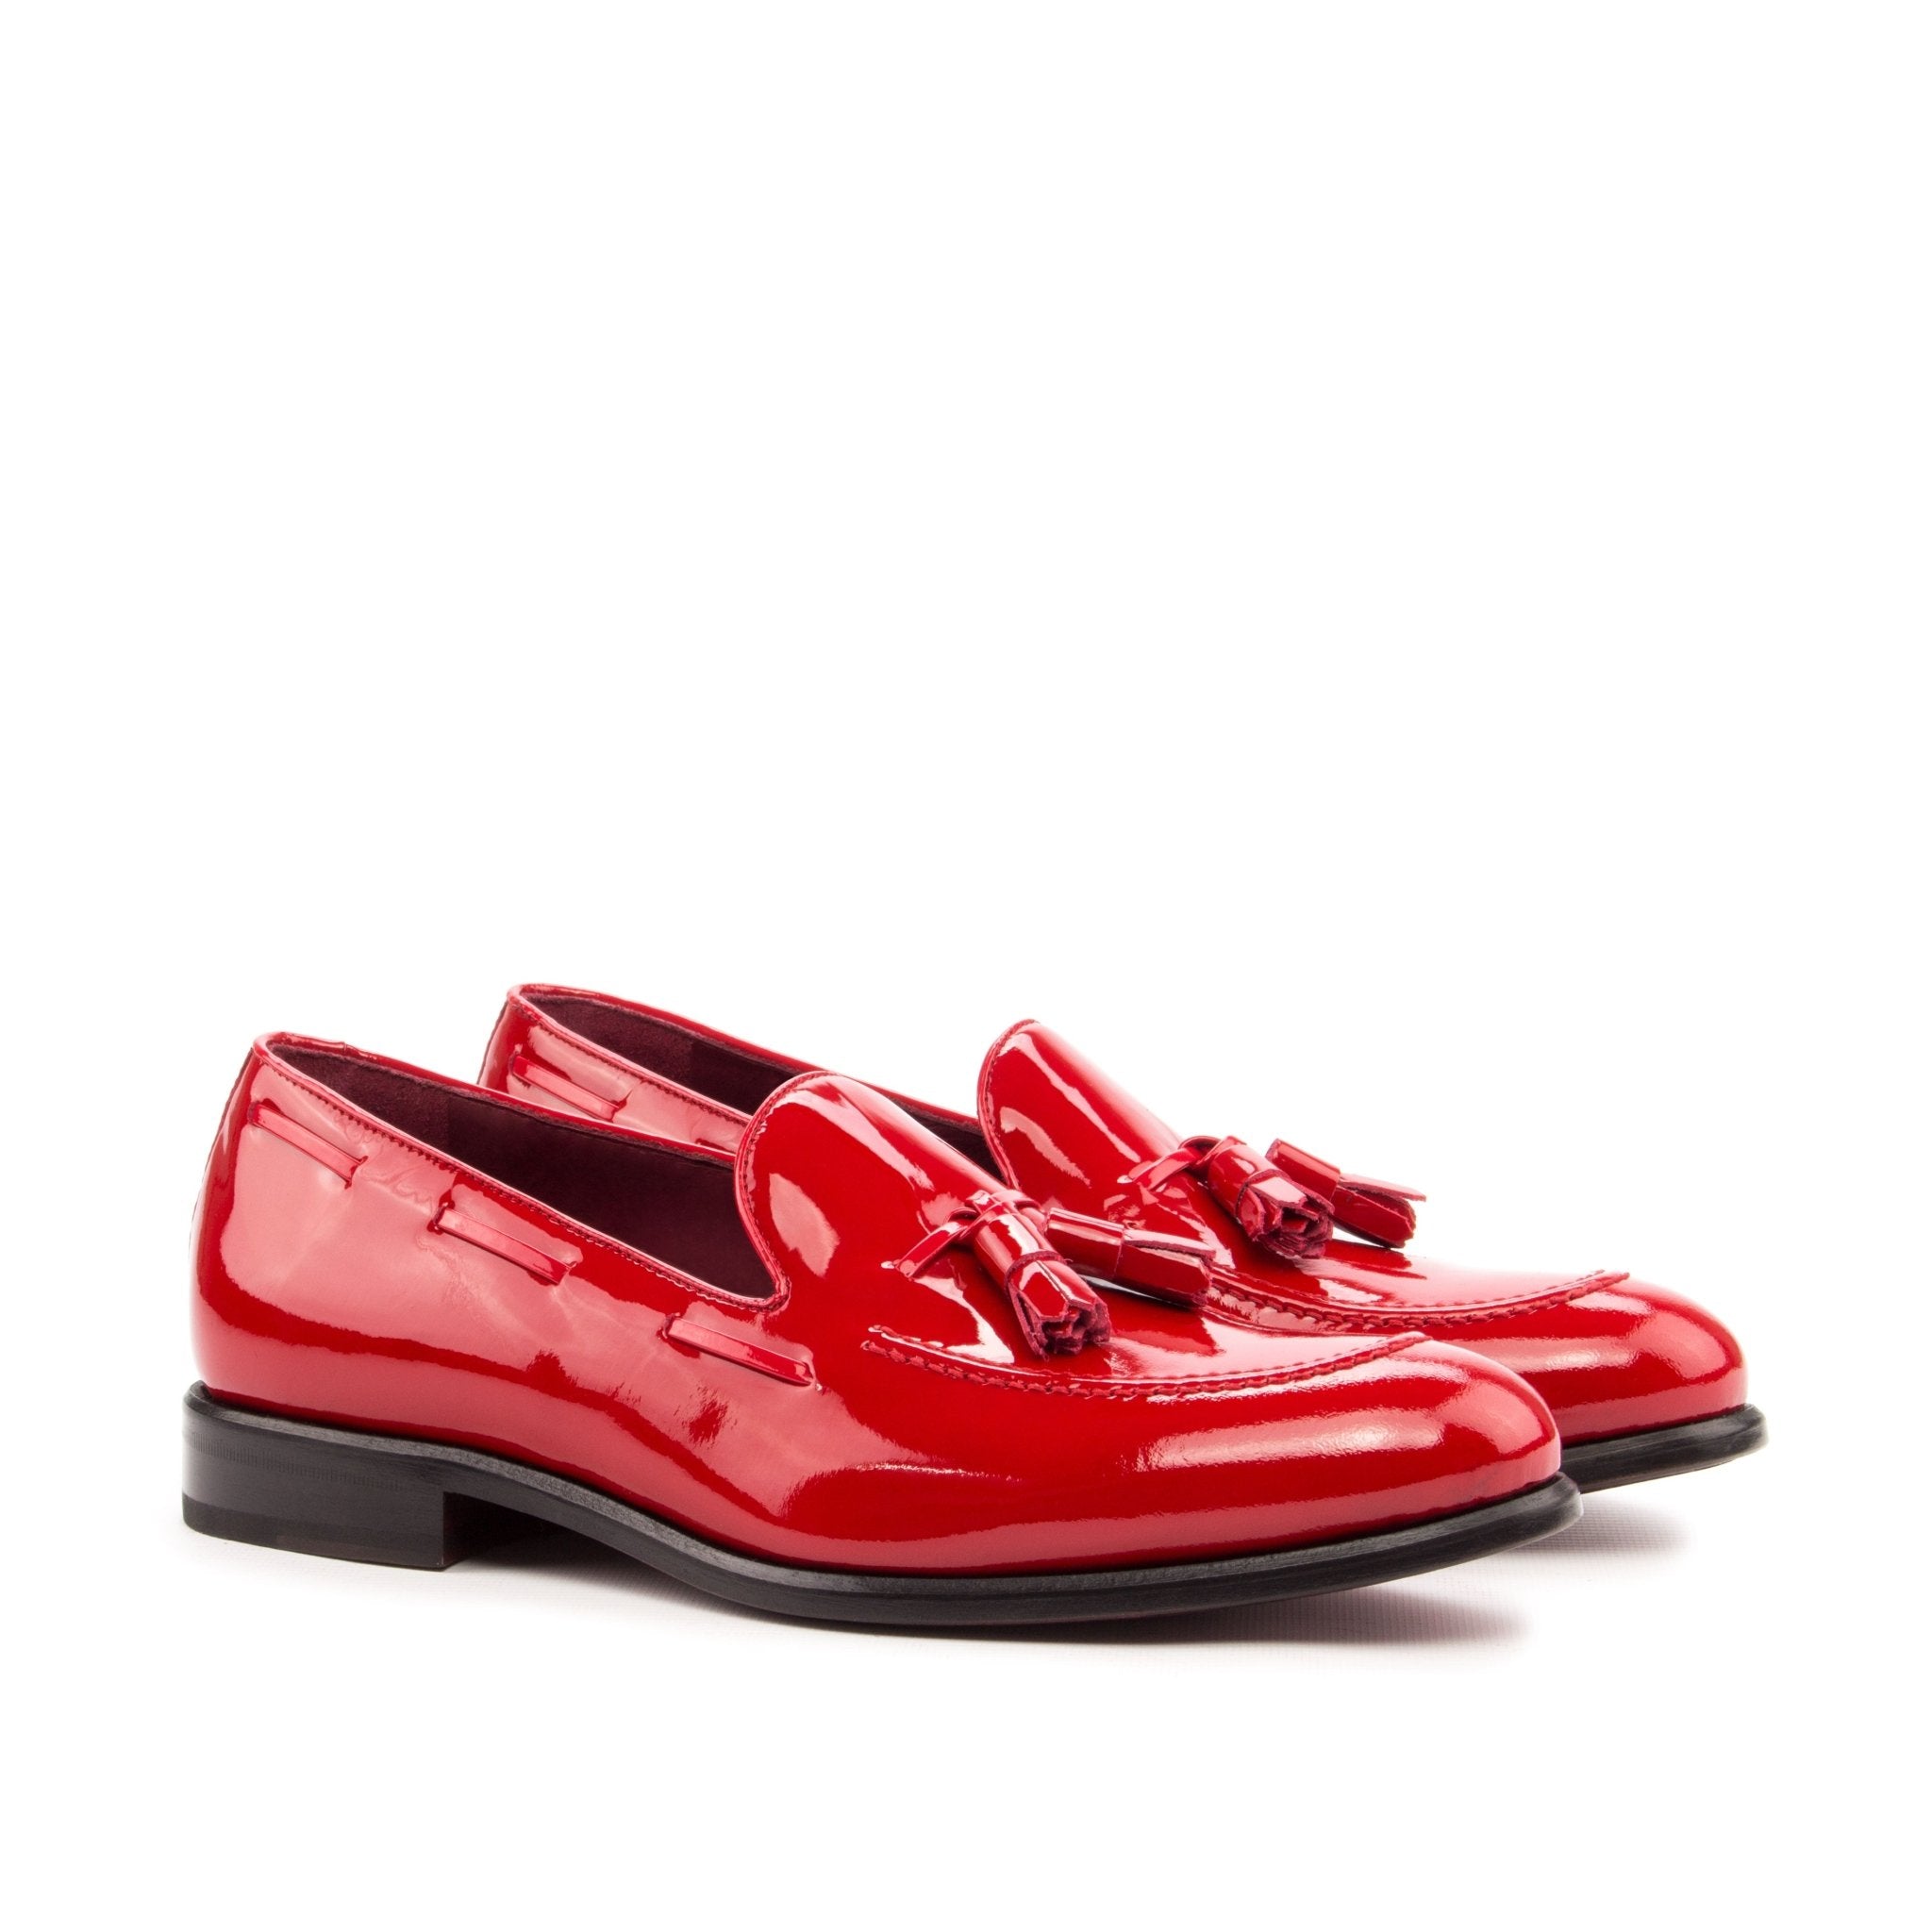 Men's Red Patent Leather Loafers - Maison de Kingsley Couture Harmonie et Fureur Spain